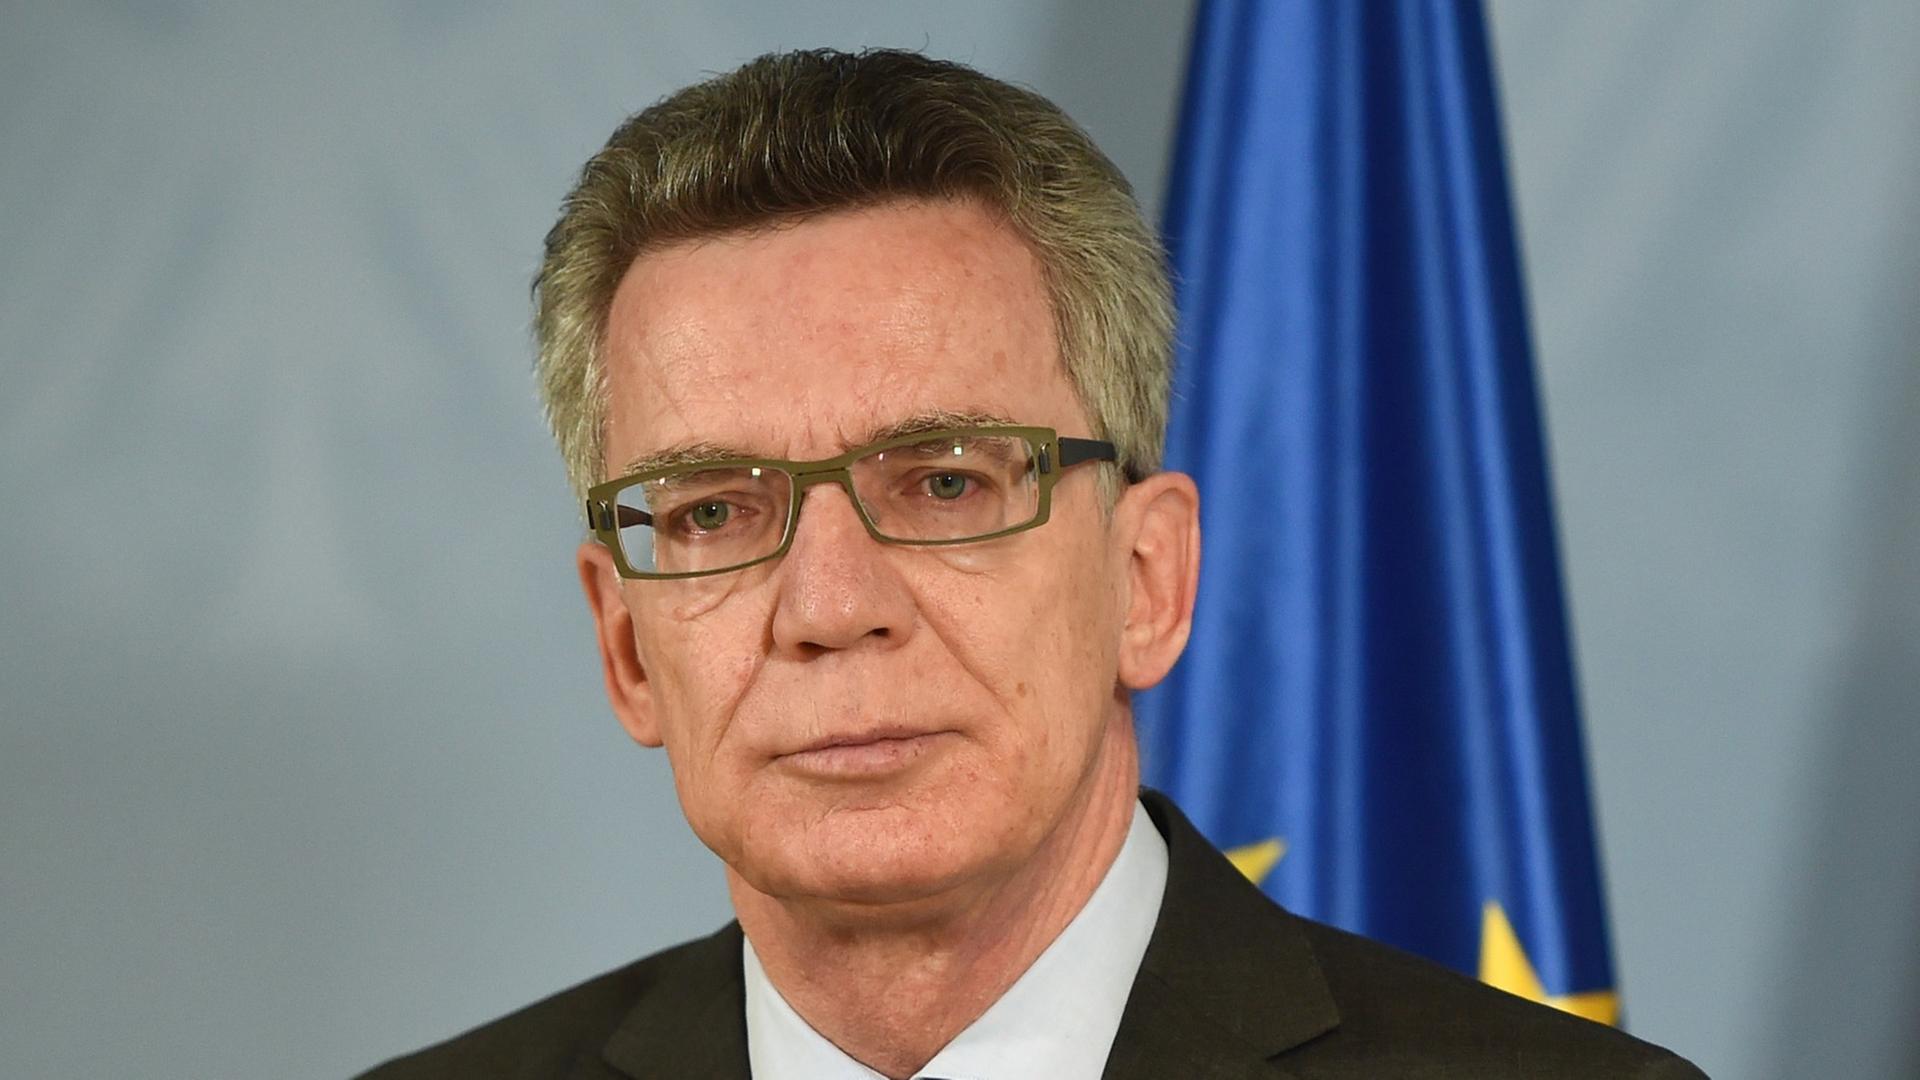 Bundesinnenminister Thomas de Maiziere (CDU) gibt ein Statement zum Verbot der militant-dschihadistischen Vereinigung "Tauhid Germany".